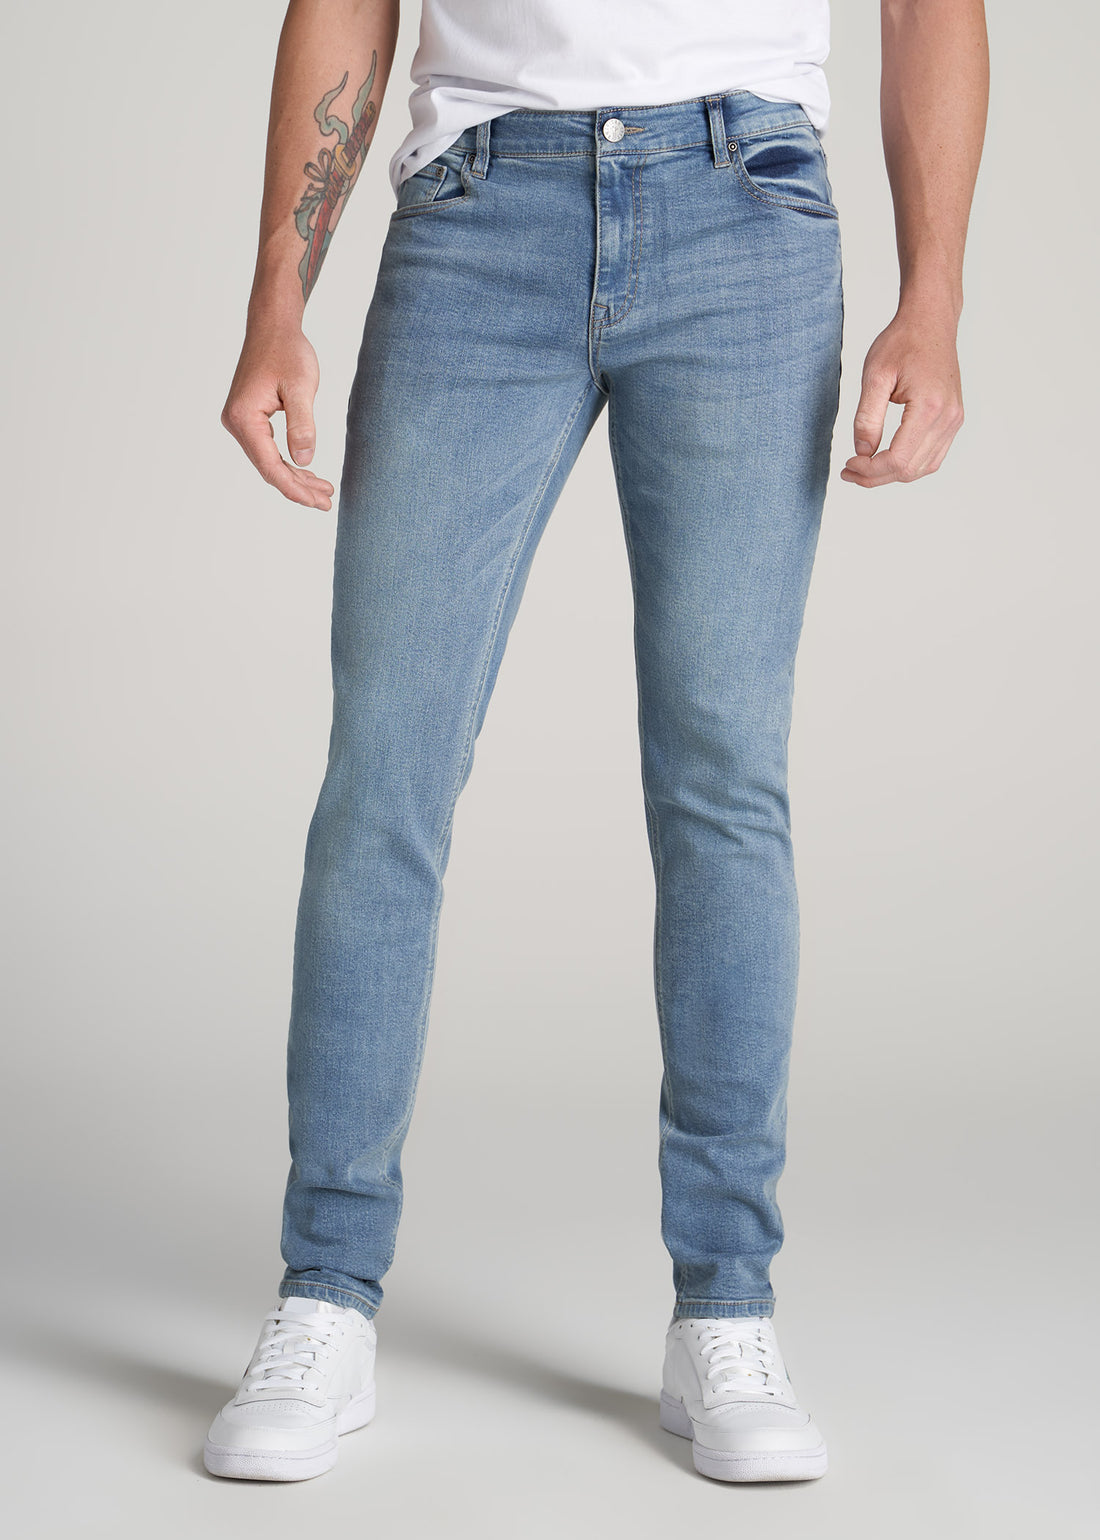 Men's Tall Travis Skinny Jeans New Fade | American Tall